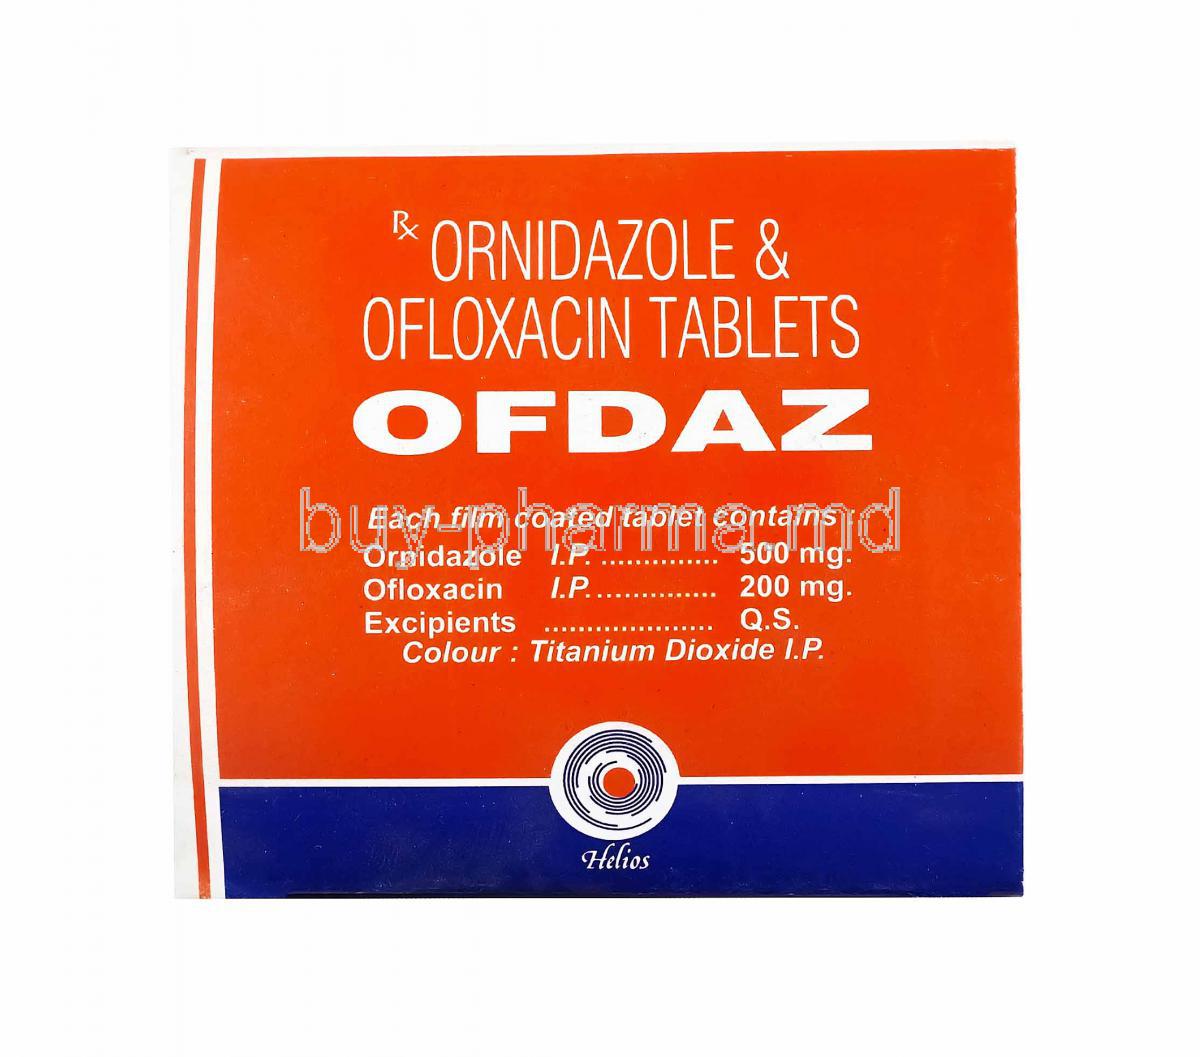 Ofdaz, Ofloxacin and Ornidazole